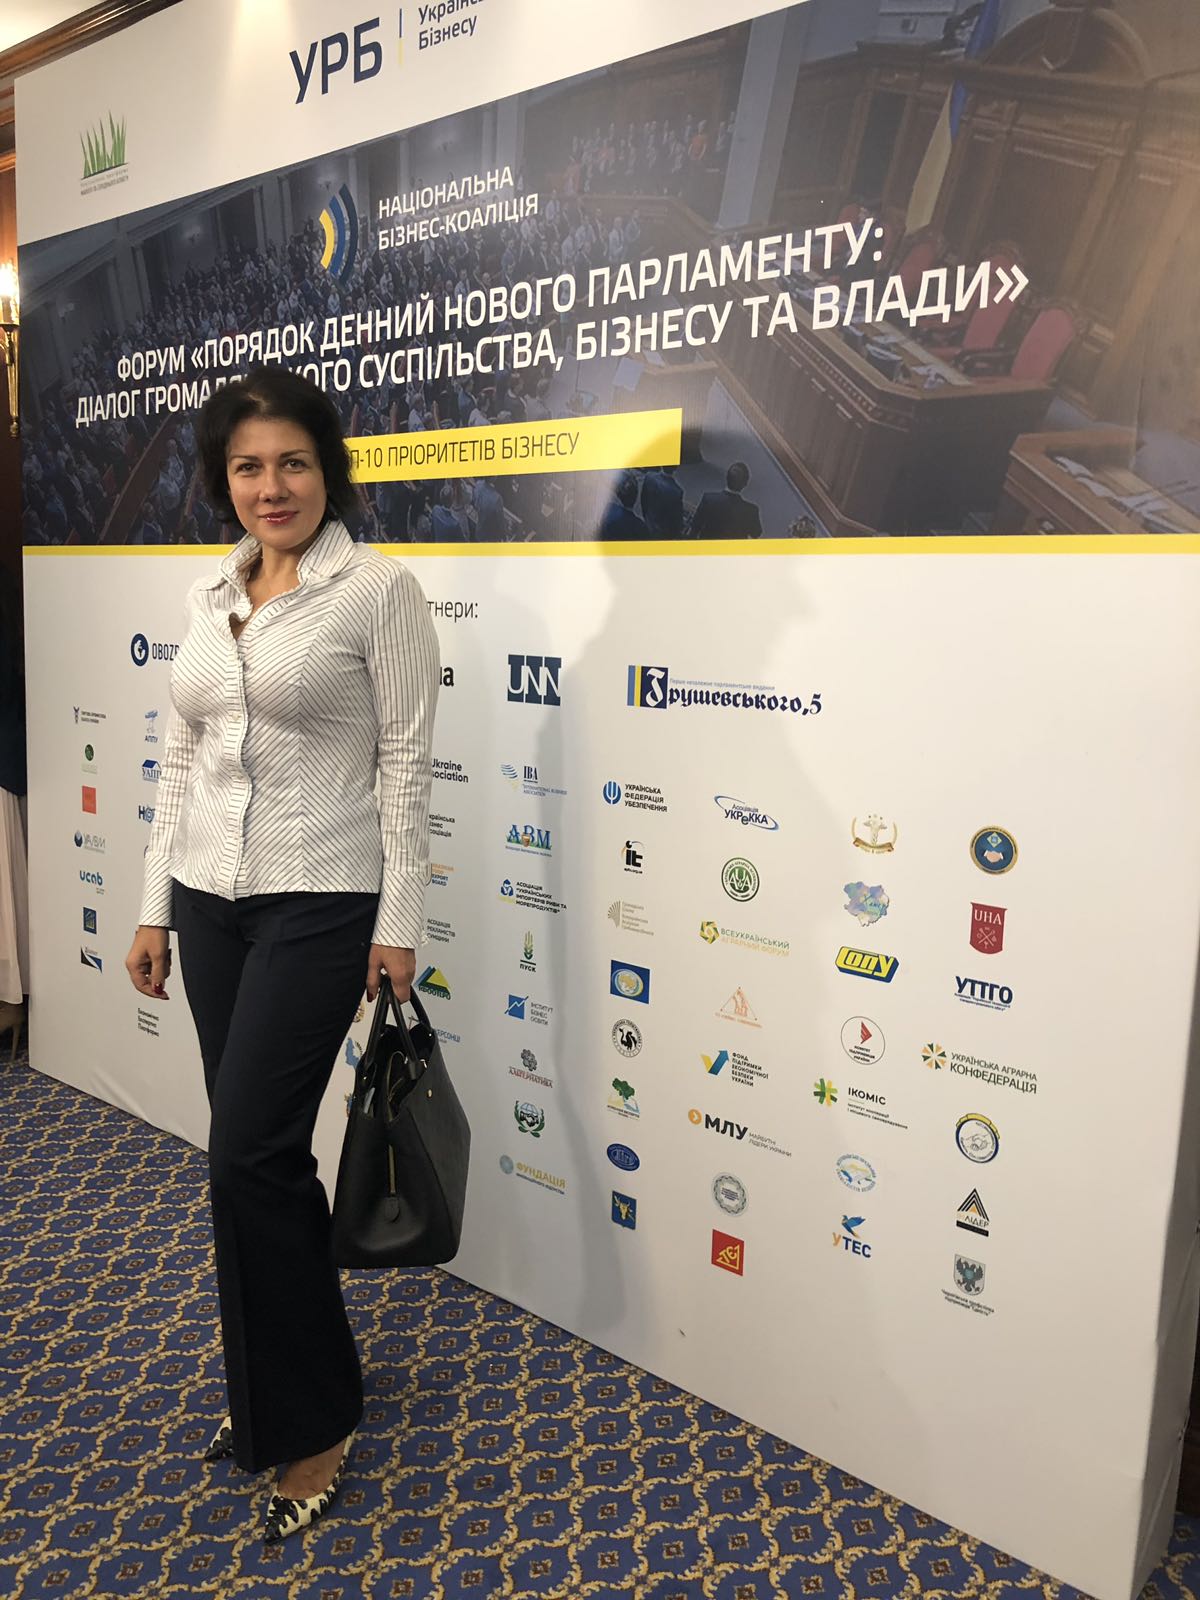 Управляючий партнер Юридичної компанії «Нобілі» Тищенко Наталія прийняла участь в Форумі Національної бізнес-коаліції «Порядок денний нового парламенту: діалог громадянського суспільства, бізнесу та влади»